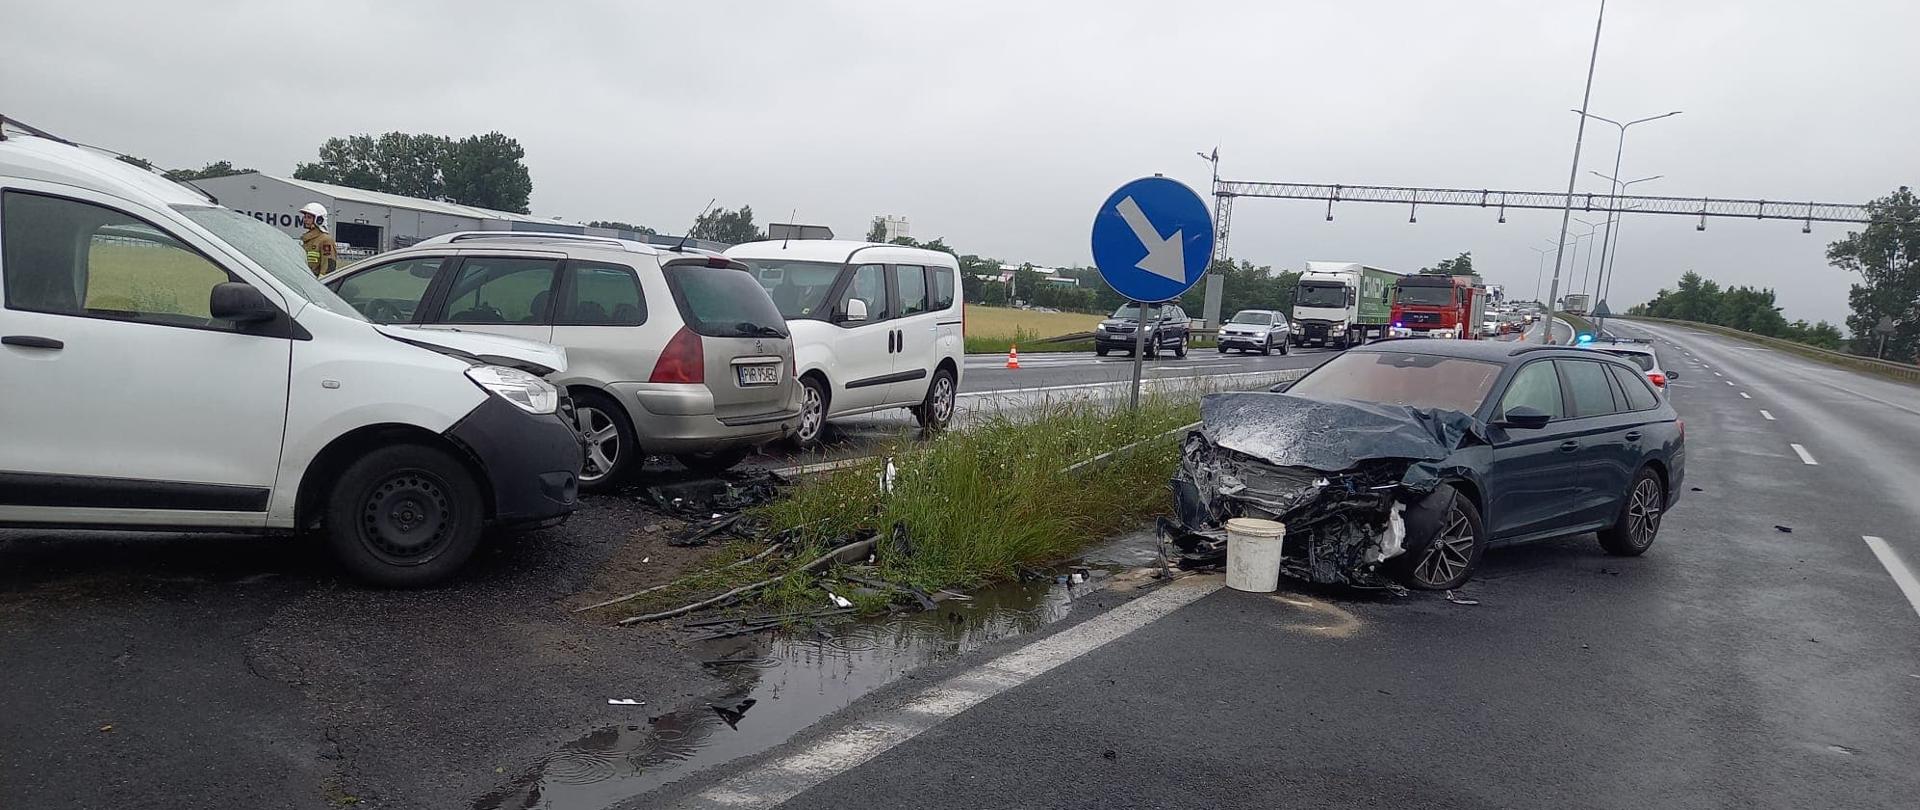 Zdjęcie przedstawia cztery samochody po wypadku